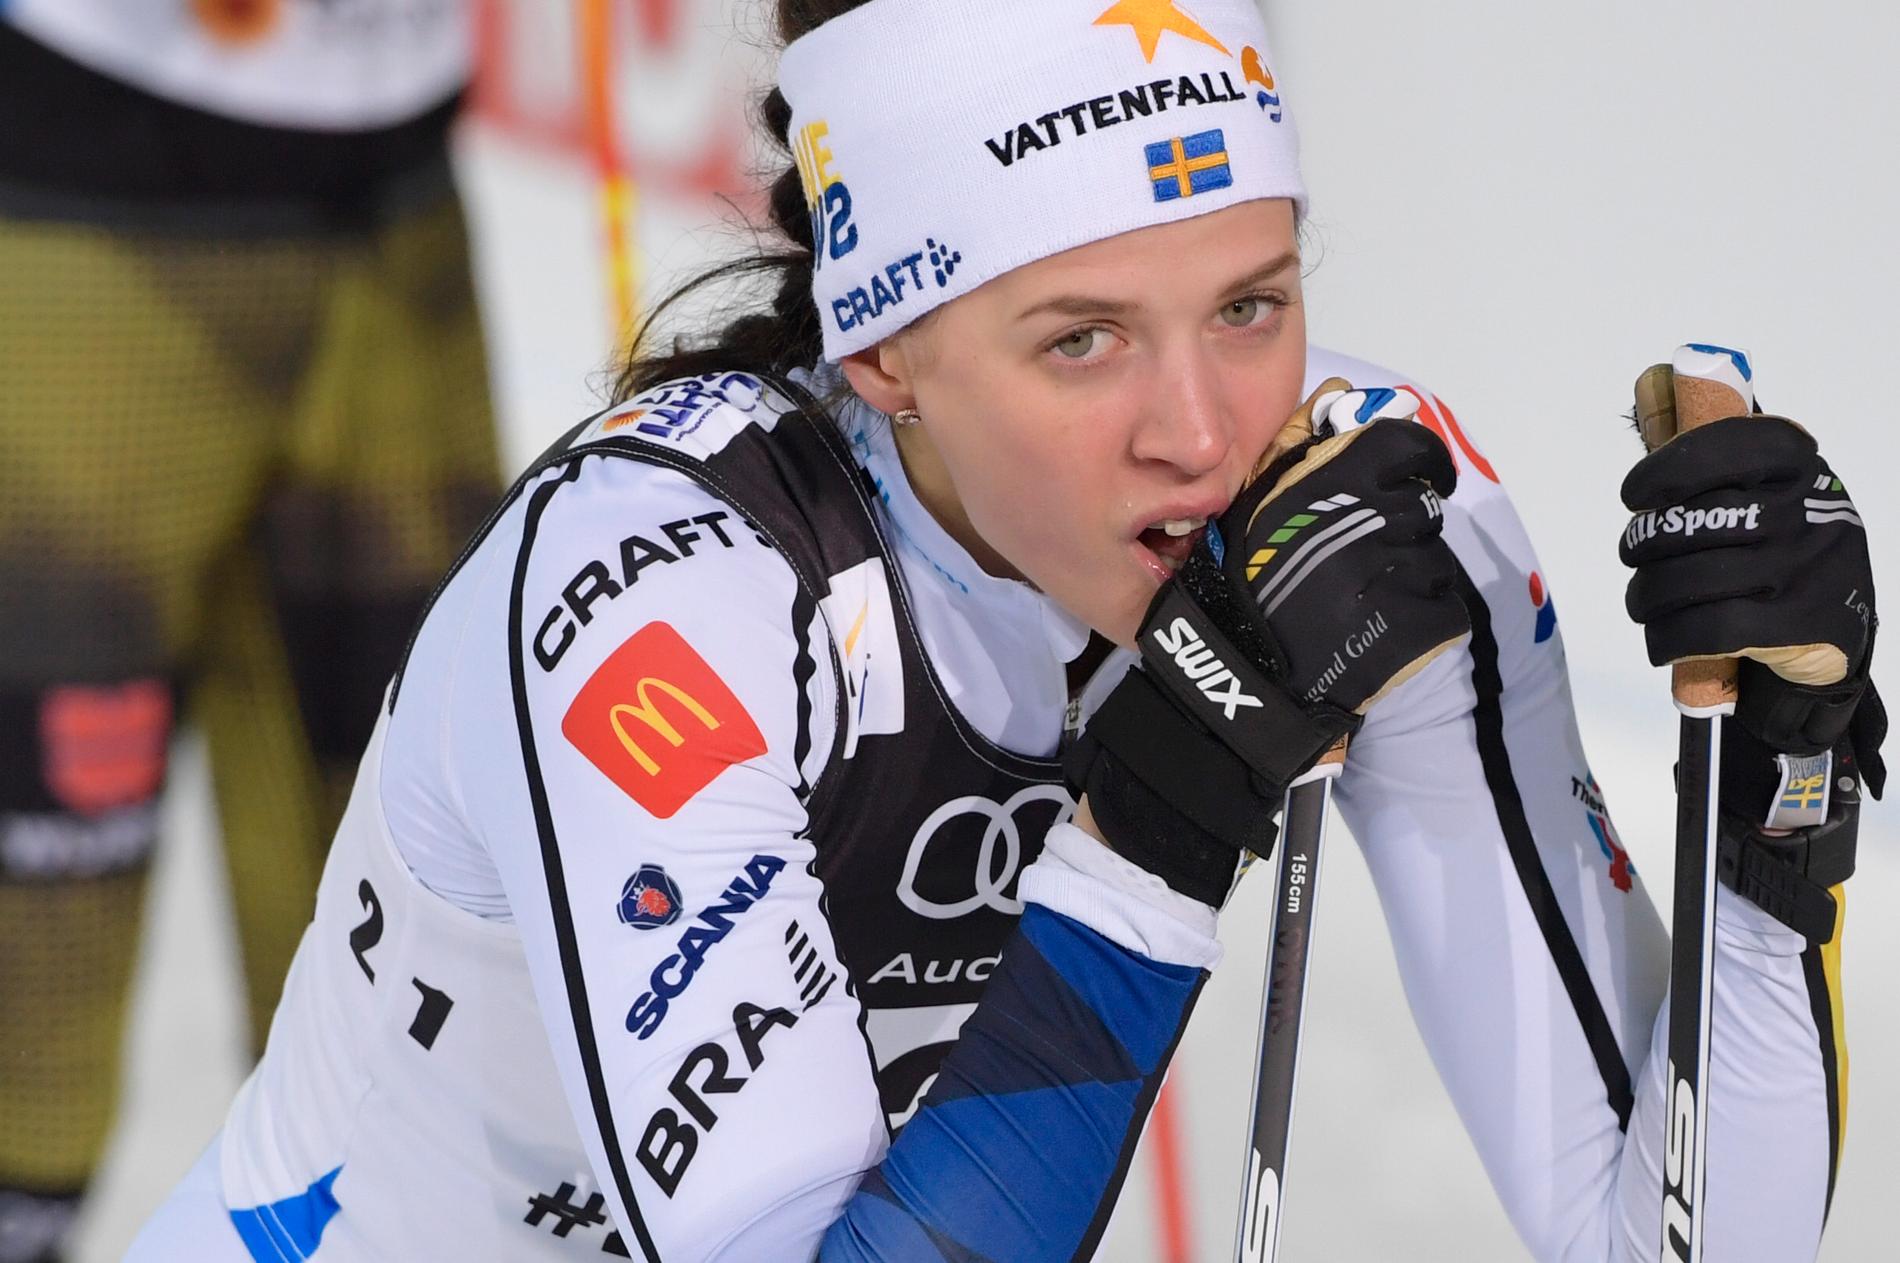 Anna Dyvik slog igenom på riktigt i vintras.